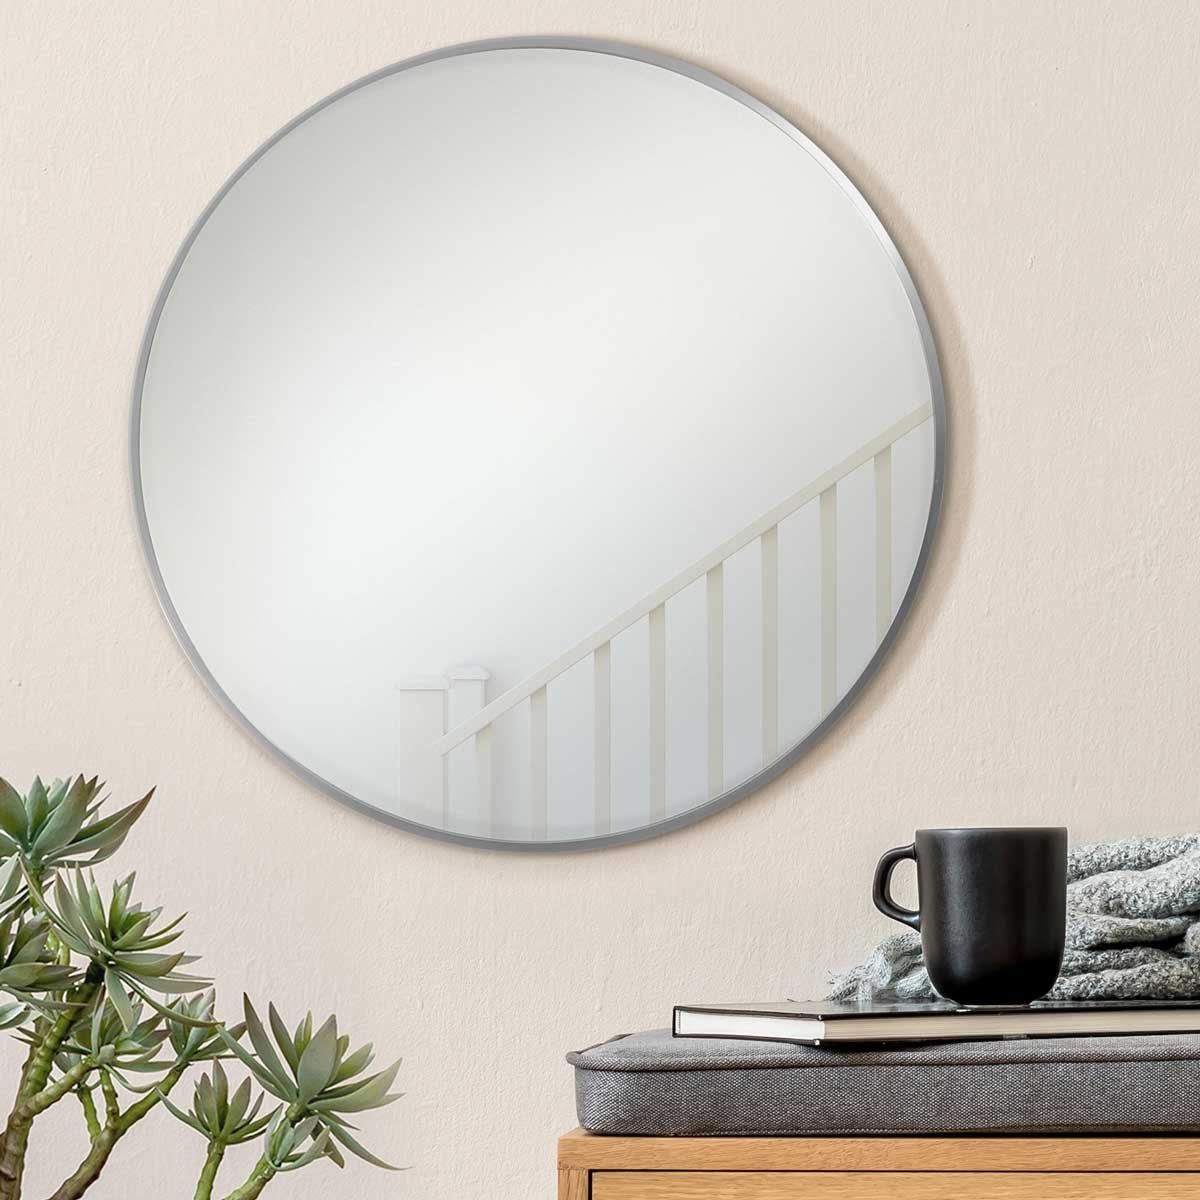 PHOTOLINI Spiegel rund mit Metallrahmen Silber, eleganter Wandspiegel, schmaler Rahmen